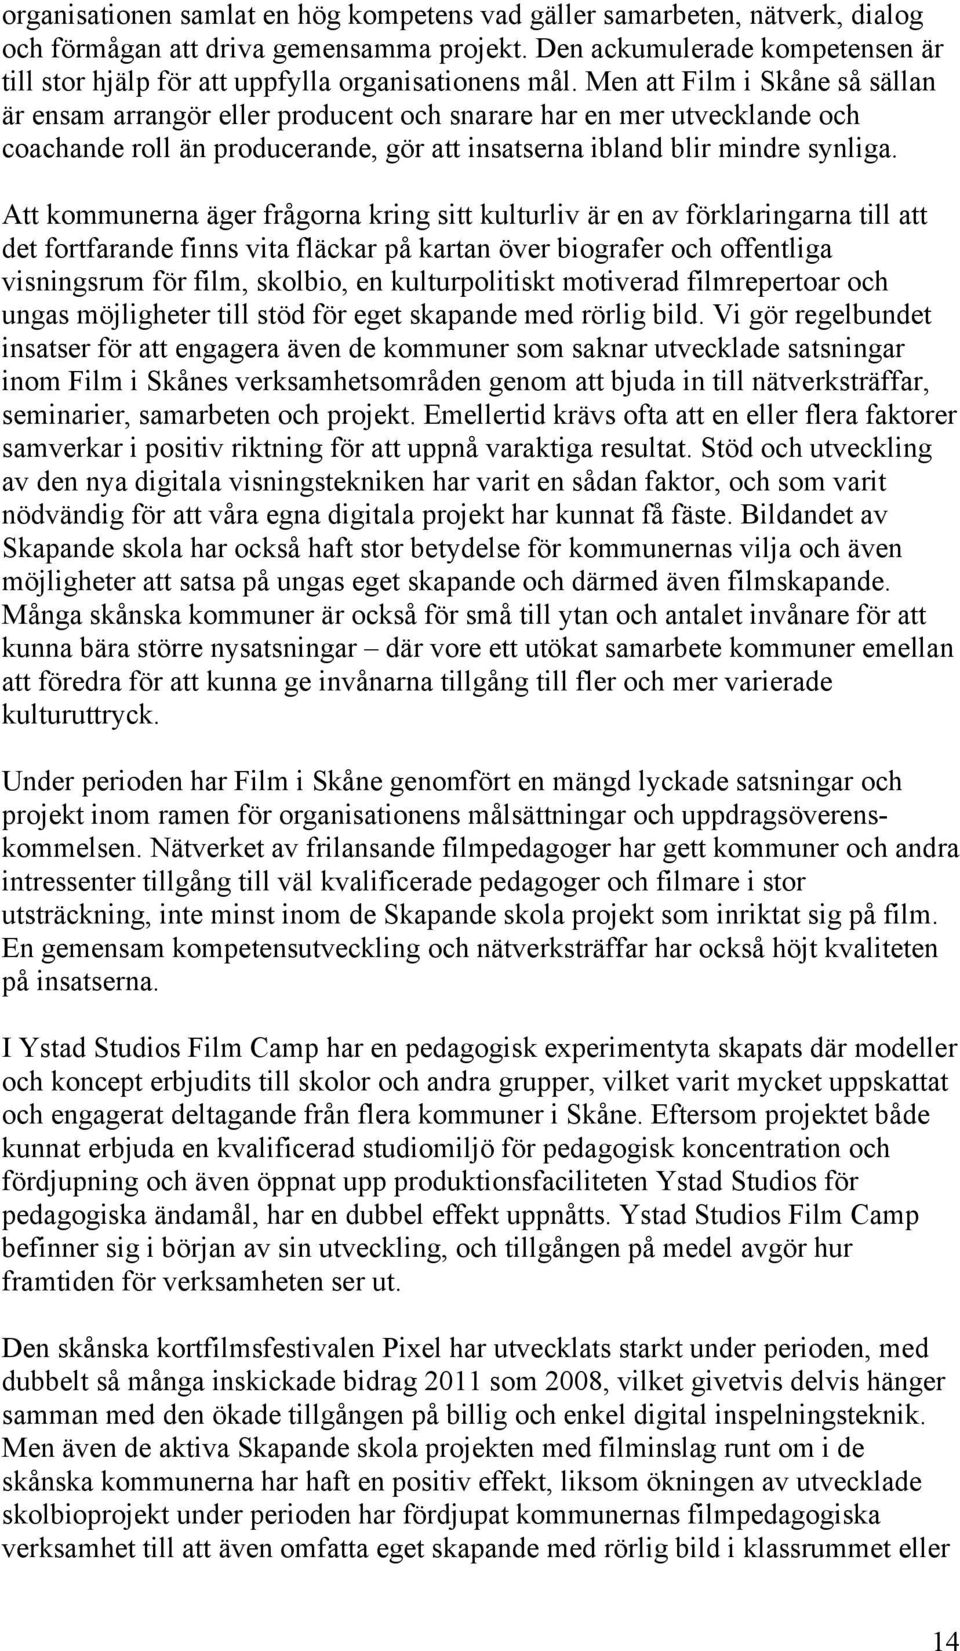 Men att Film i Skåne så sällan är ensam arrangör eller producent och snarare har en mer utvecklande och coachande roll än producerande, gör att insatserna ibland blir mindre synliga.